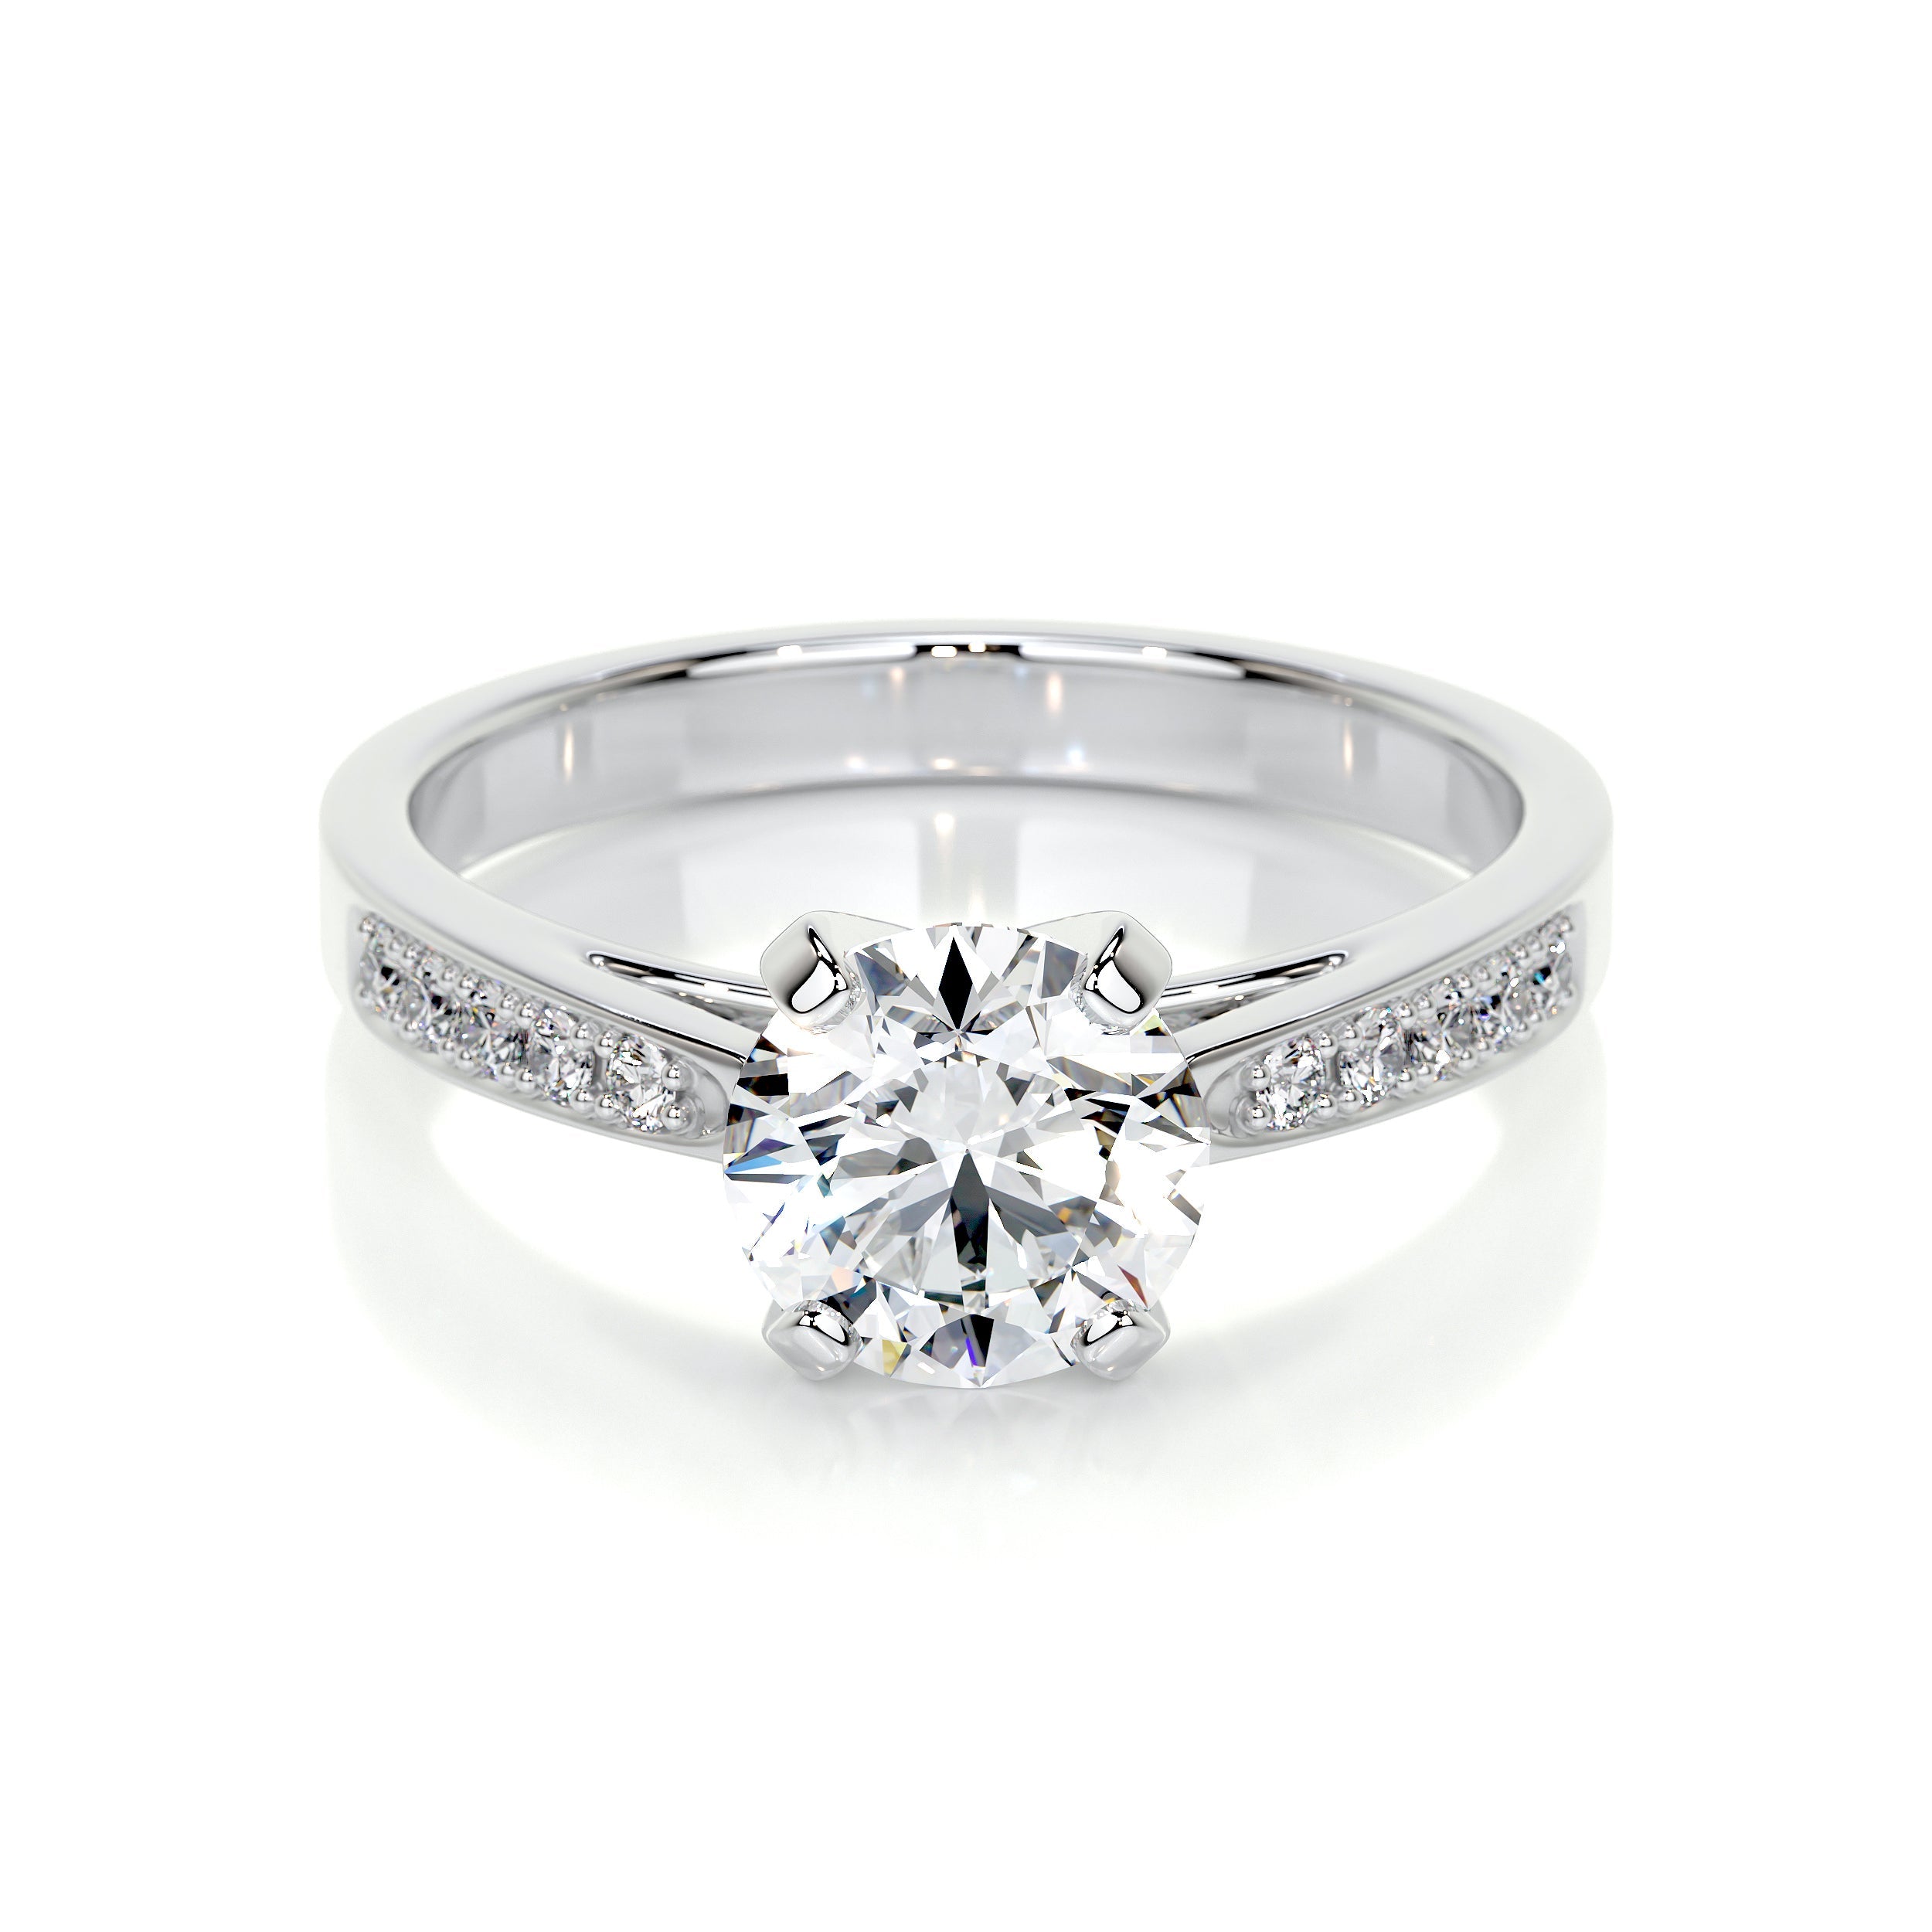 Margaret Lab Grown Diamond Ring   (1.35 Carat) -Platinum